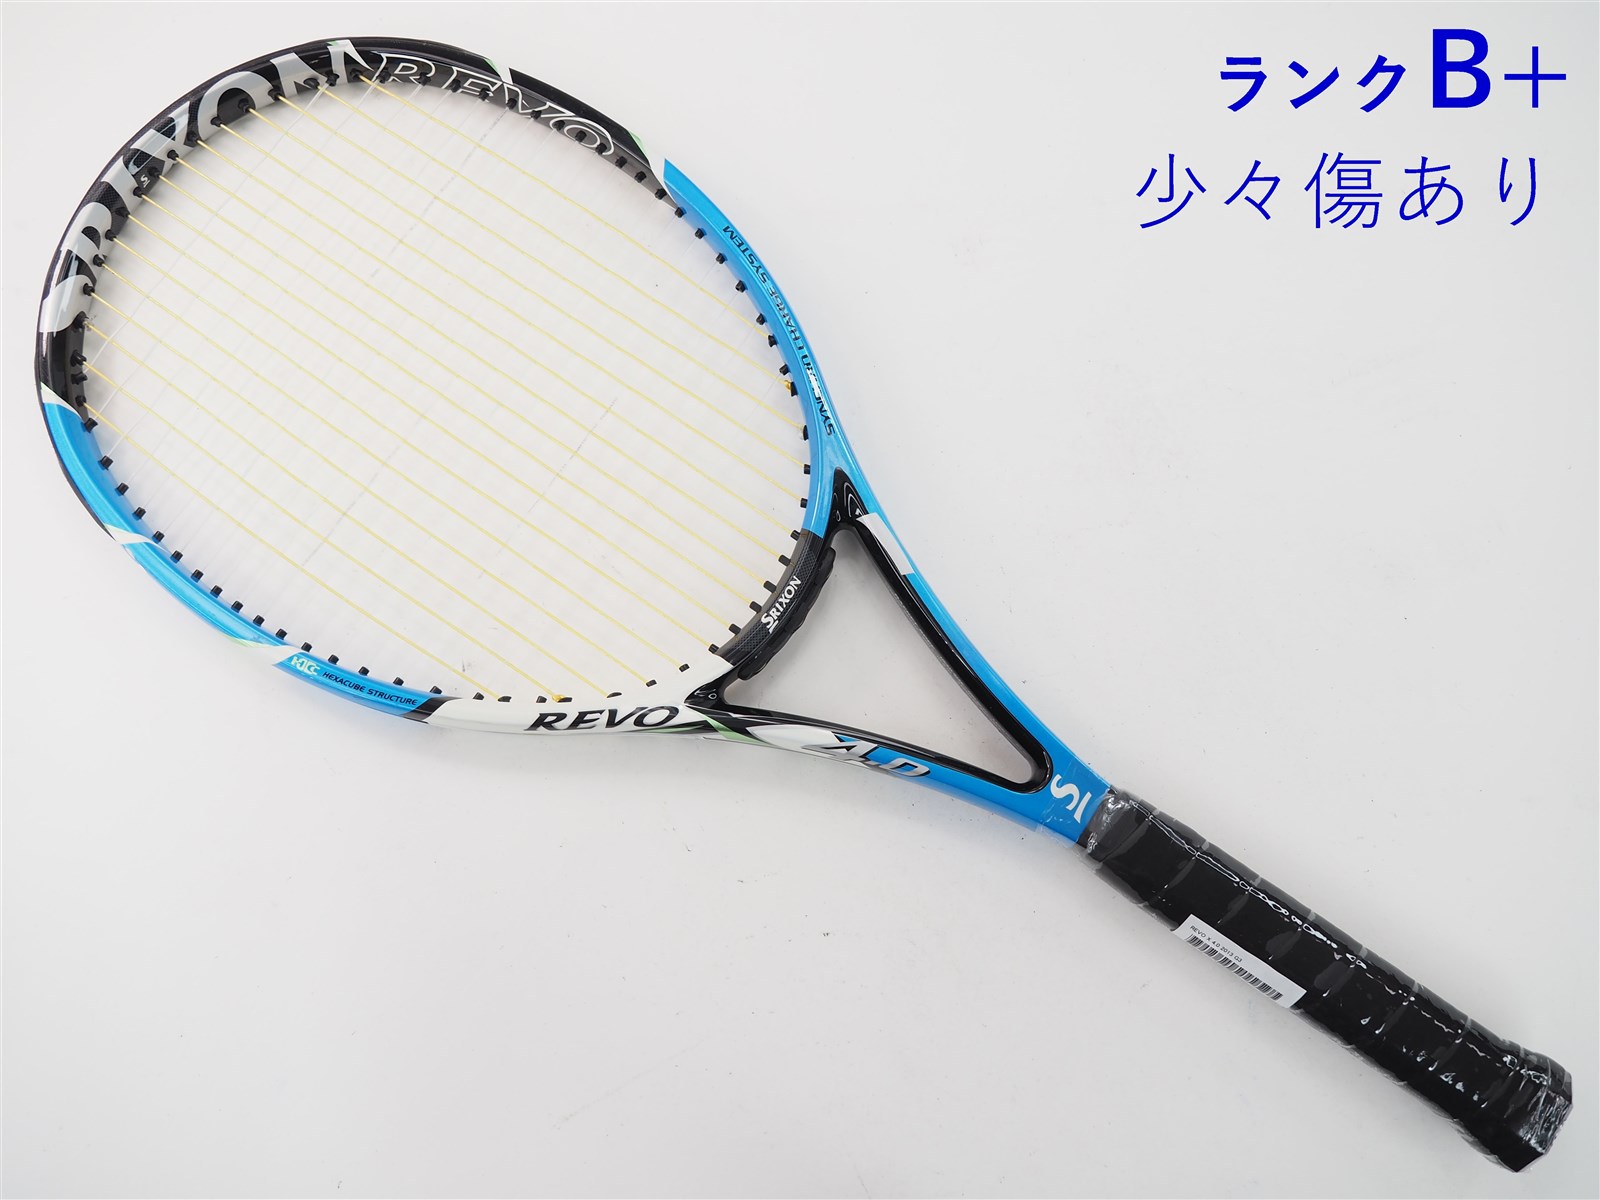 テニスラケット スリクソン レヴォ エックス 4.0 2013年モデル (G3